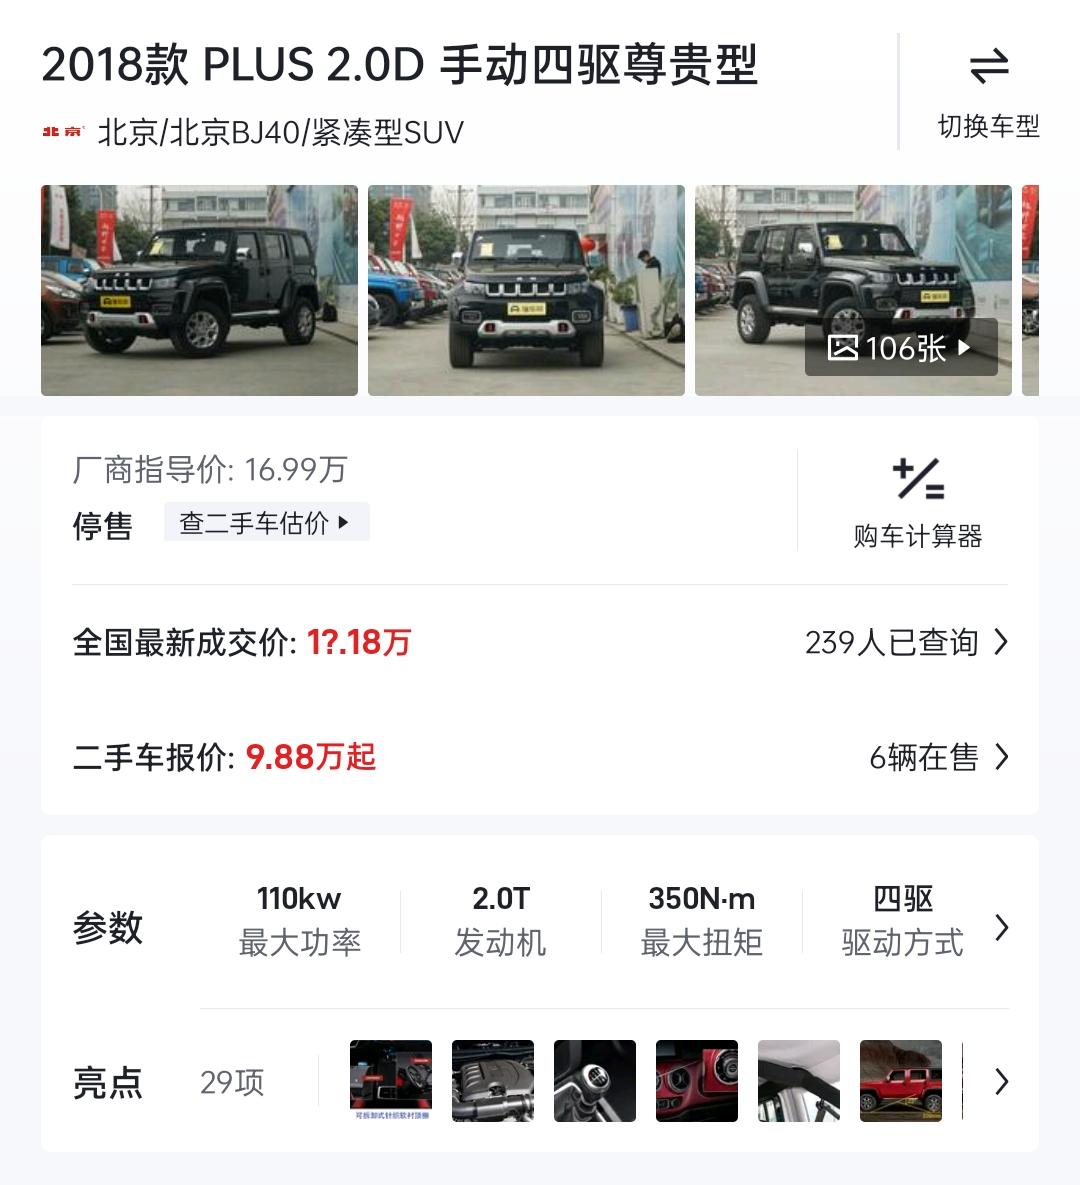 北京BJ40 ，想买18款北京bj40plus柴油版二手的（有的app是写的19款，咱弄不太清），有没有